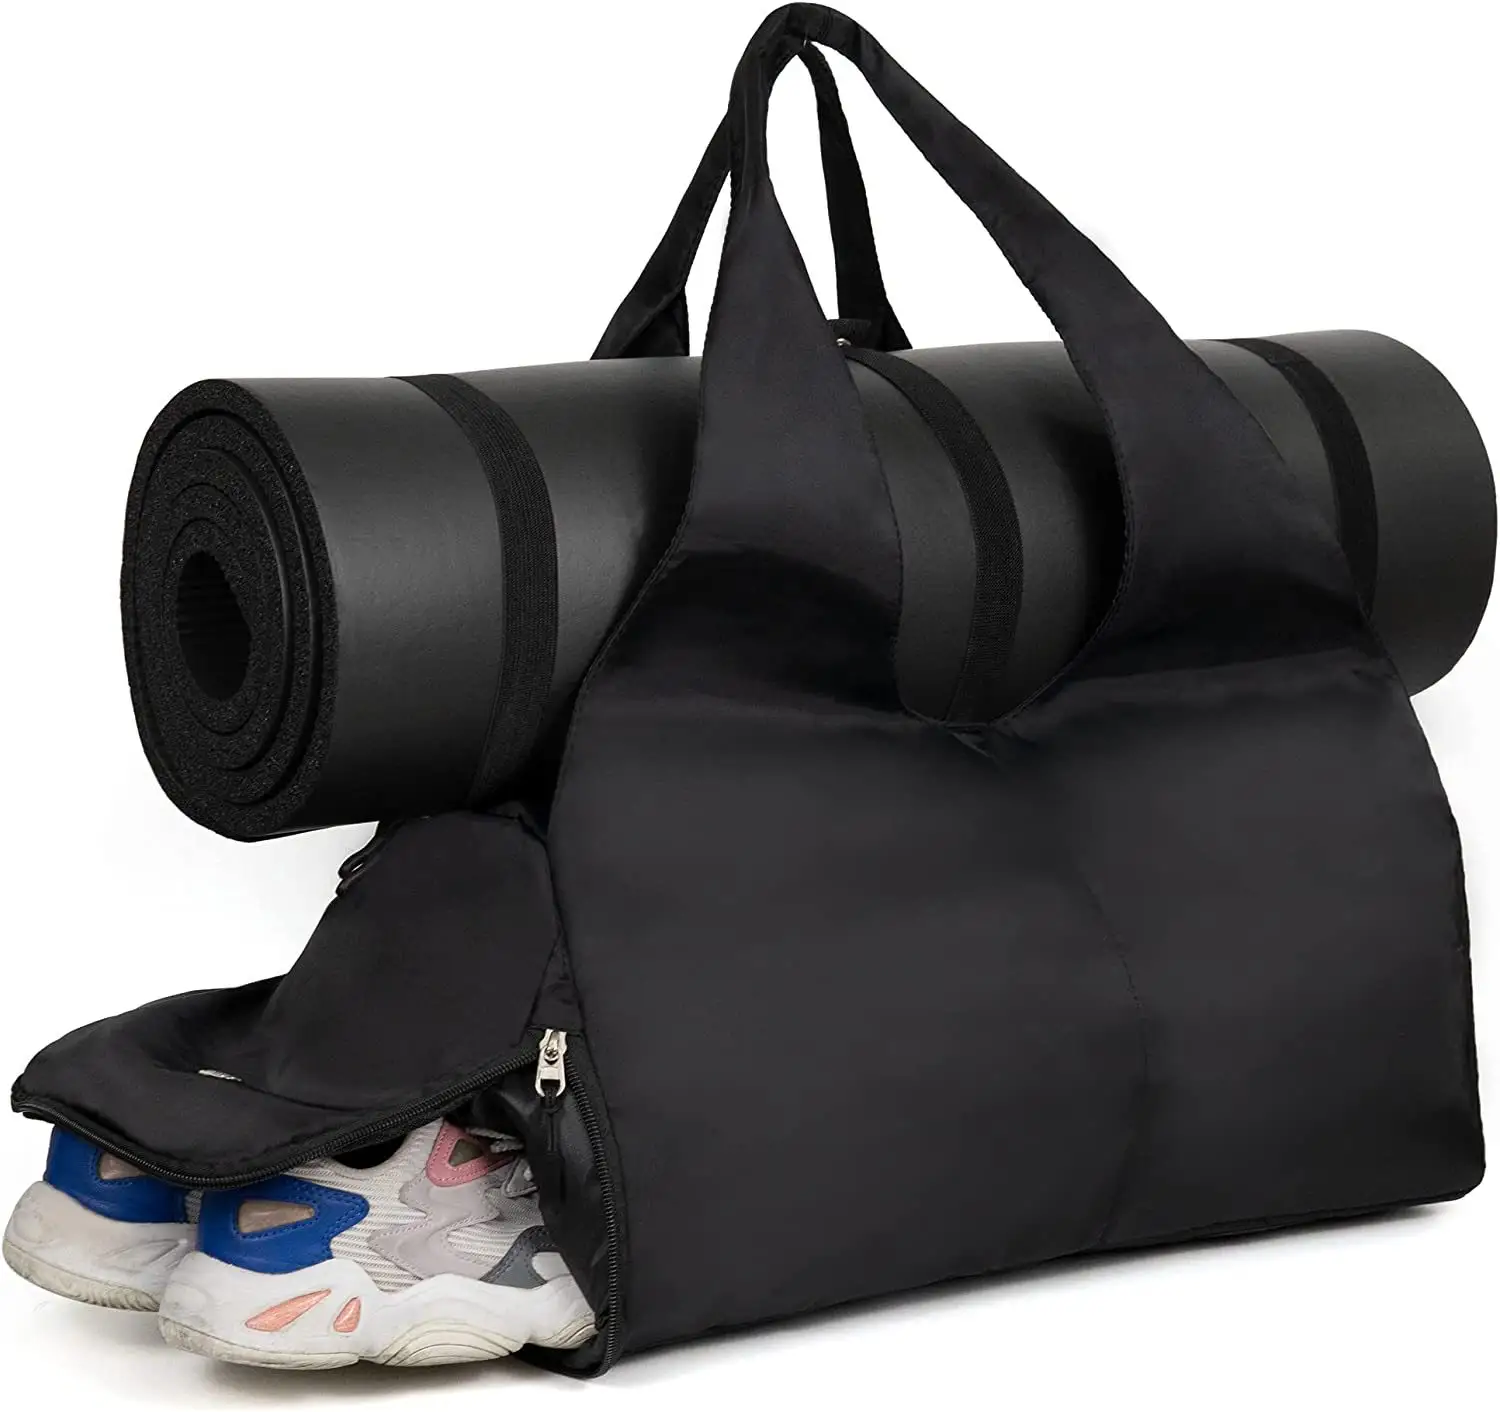 Bolsa de viagem compatível com laptop + compartimento para sapatos de até 13,3", bolsa de ioga esportiva feminina para o fim de semana durante a noite, 19"